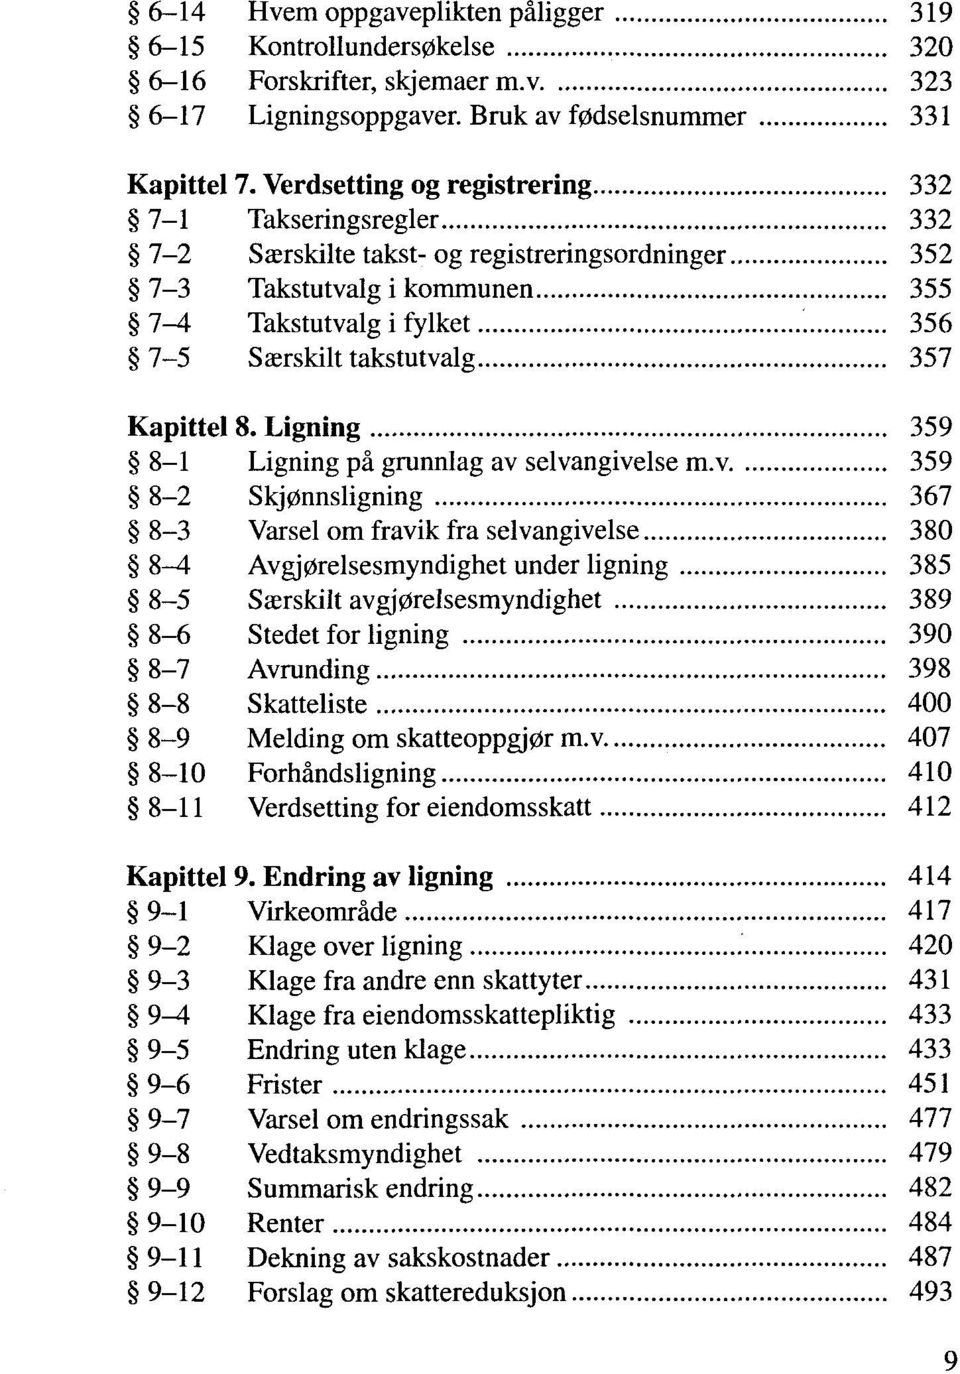 Kapittel 8. Ligning 359 8-1 Ligning pä grunnlag av selvangivelse m.